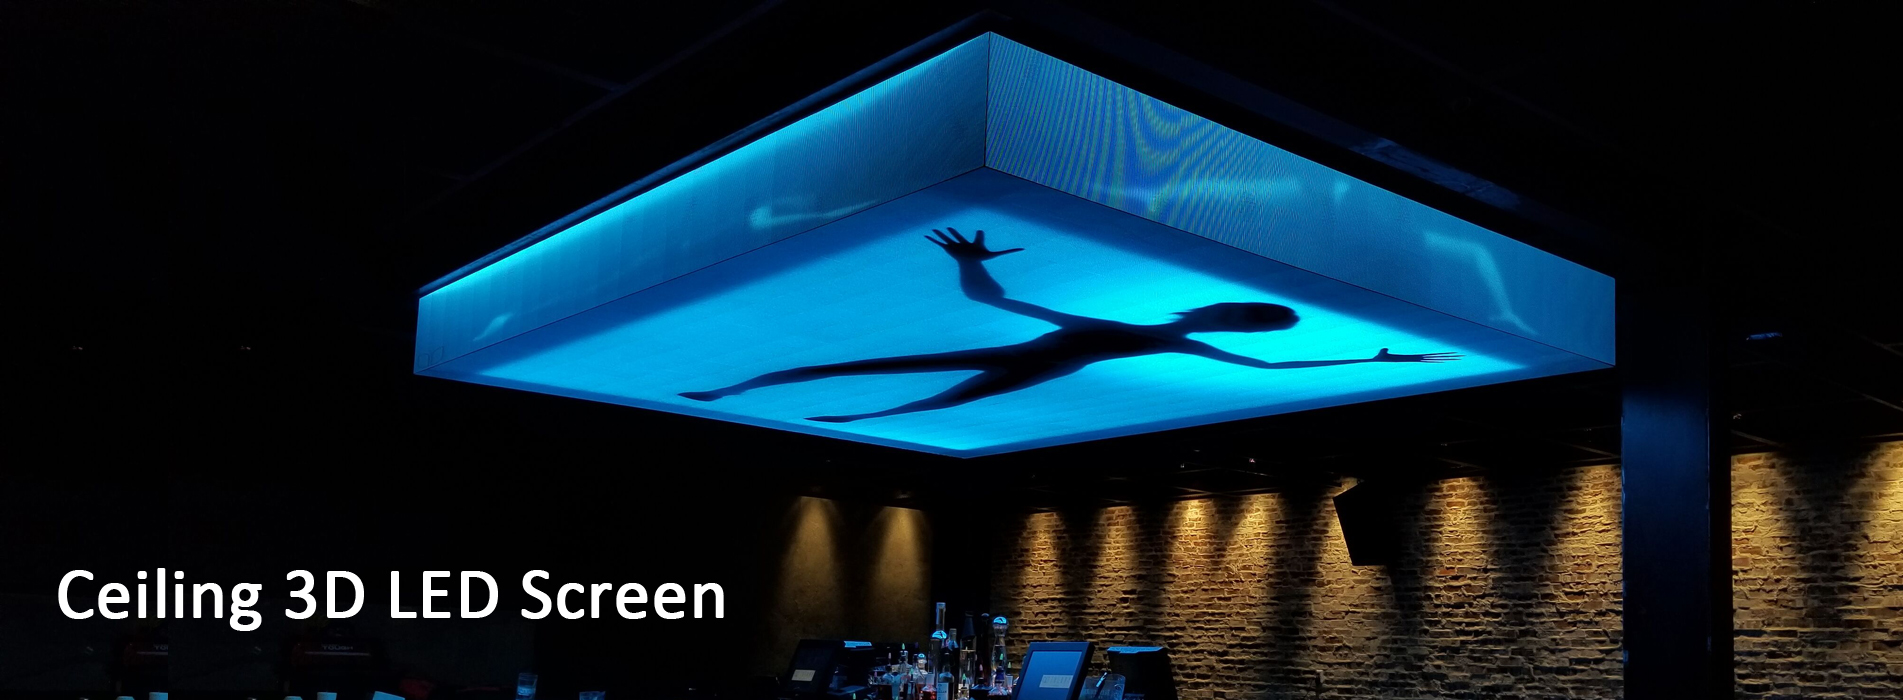 Ceiling 3D LED Screen